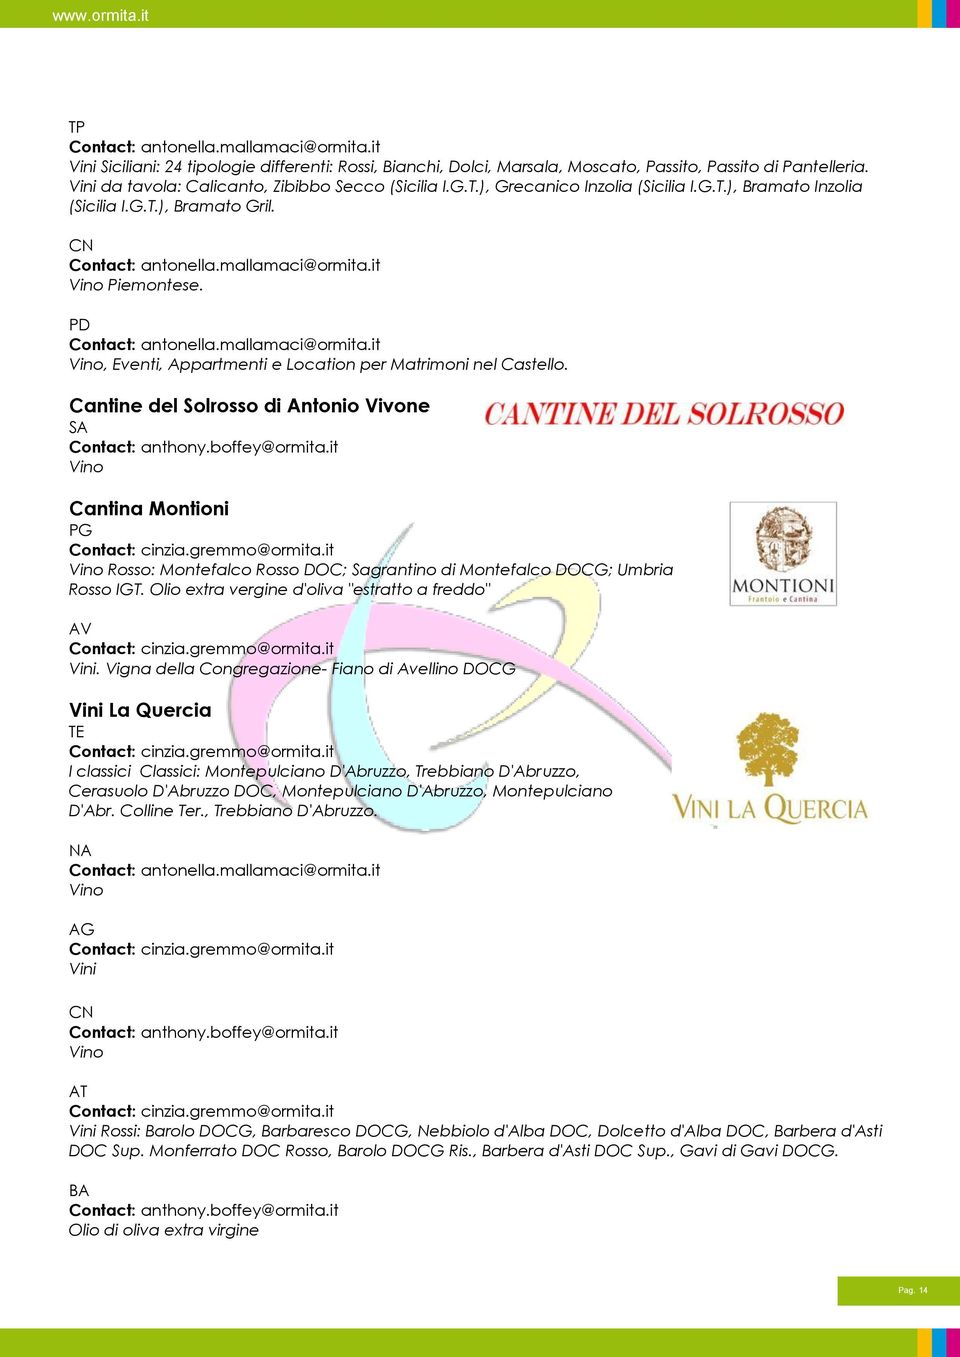 Cantine del Solrosso di Antonio Vivone SA Vino Cantina Montioni PG Vino Rosso: Montefalco Rosso DOC; Sagrantino di Montefalco DOCG; Umbria Rosso IGT.